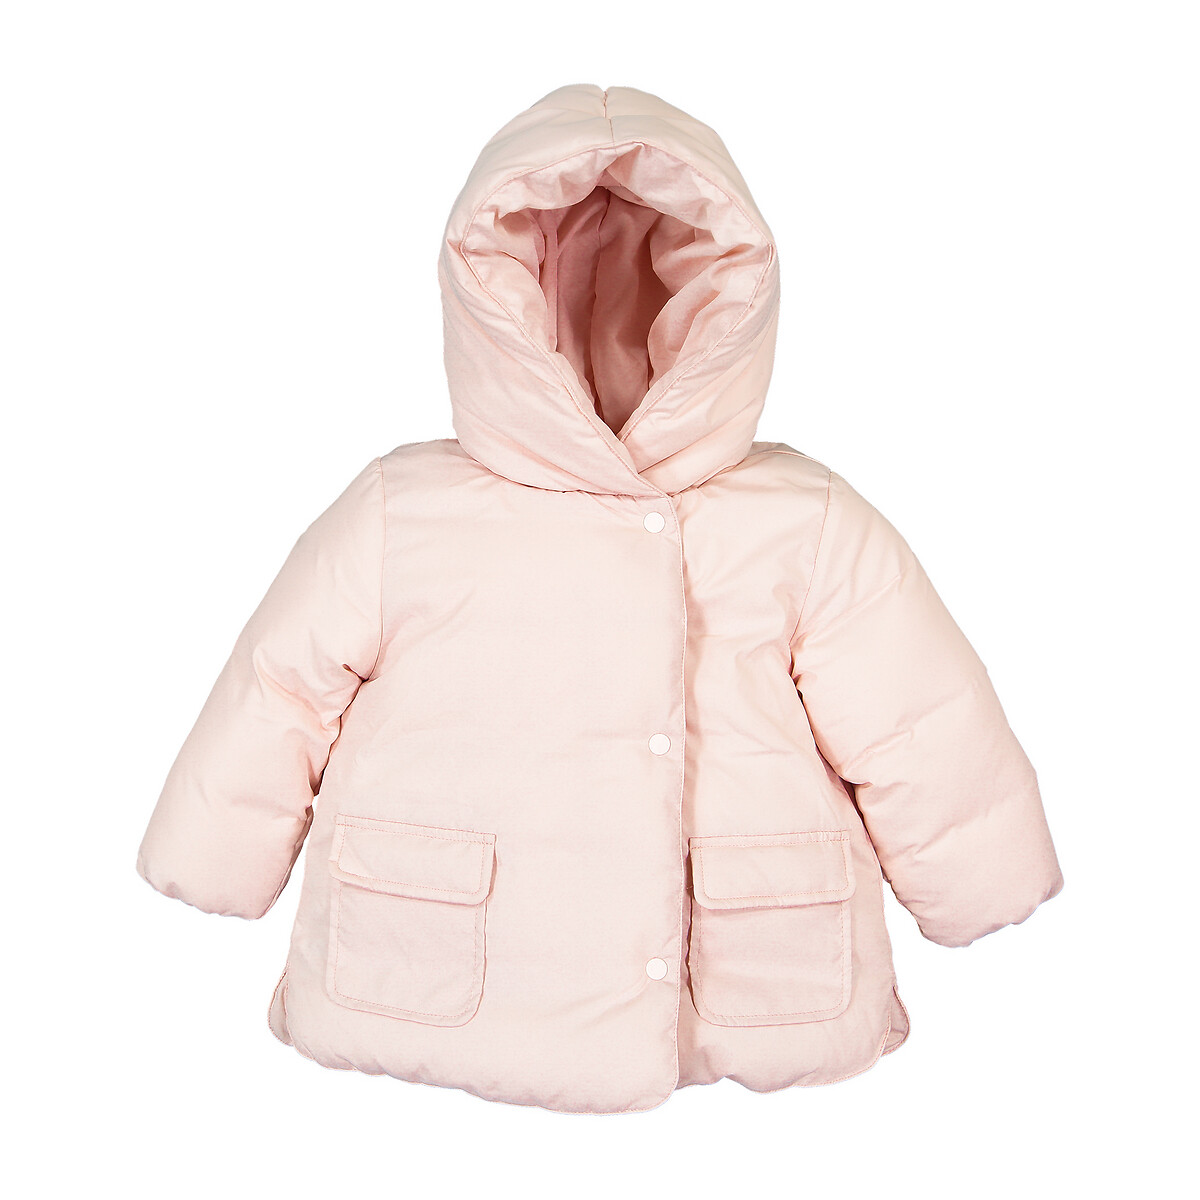 Куртка La Redoute Стеганая утепленная с капюшоном 3 мес-4 года 18 мес. - 81 см розовый, размер 18 мес. - 81 см